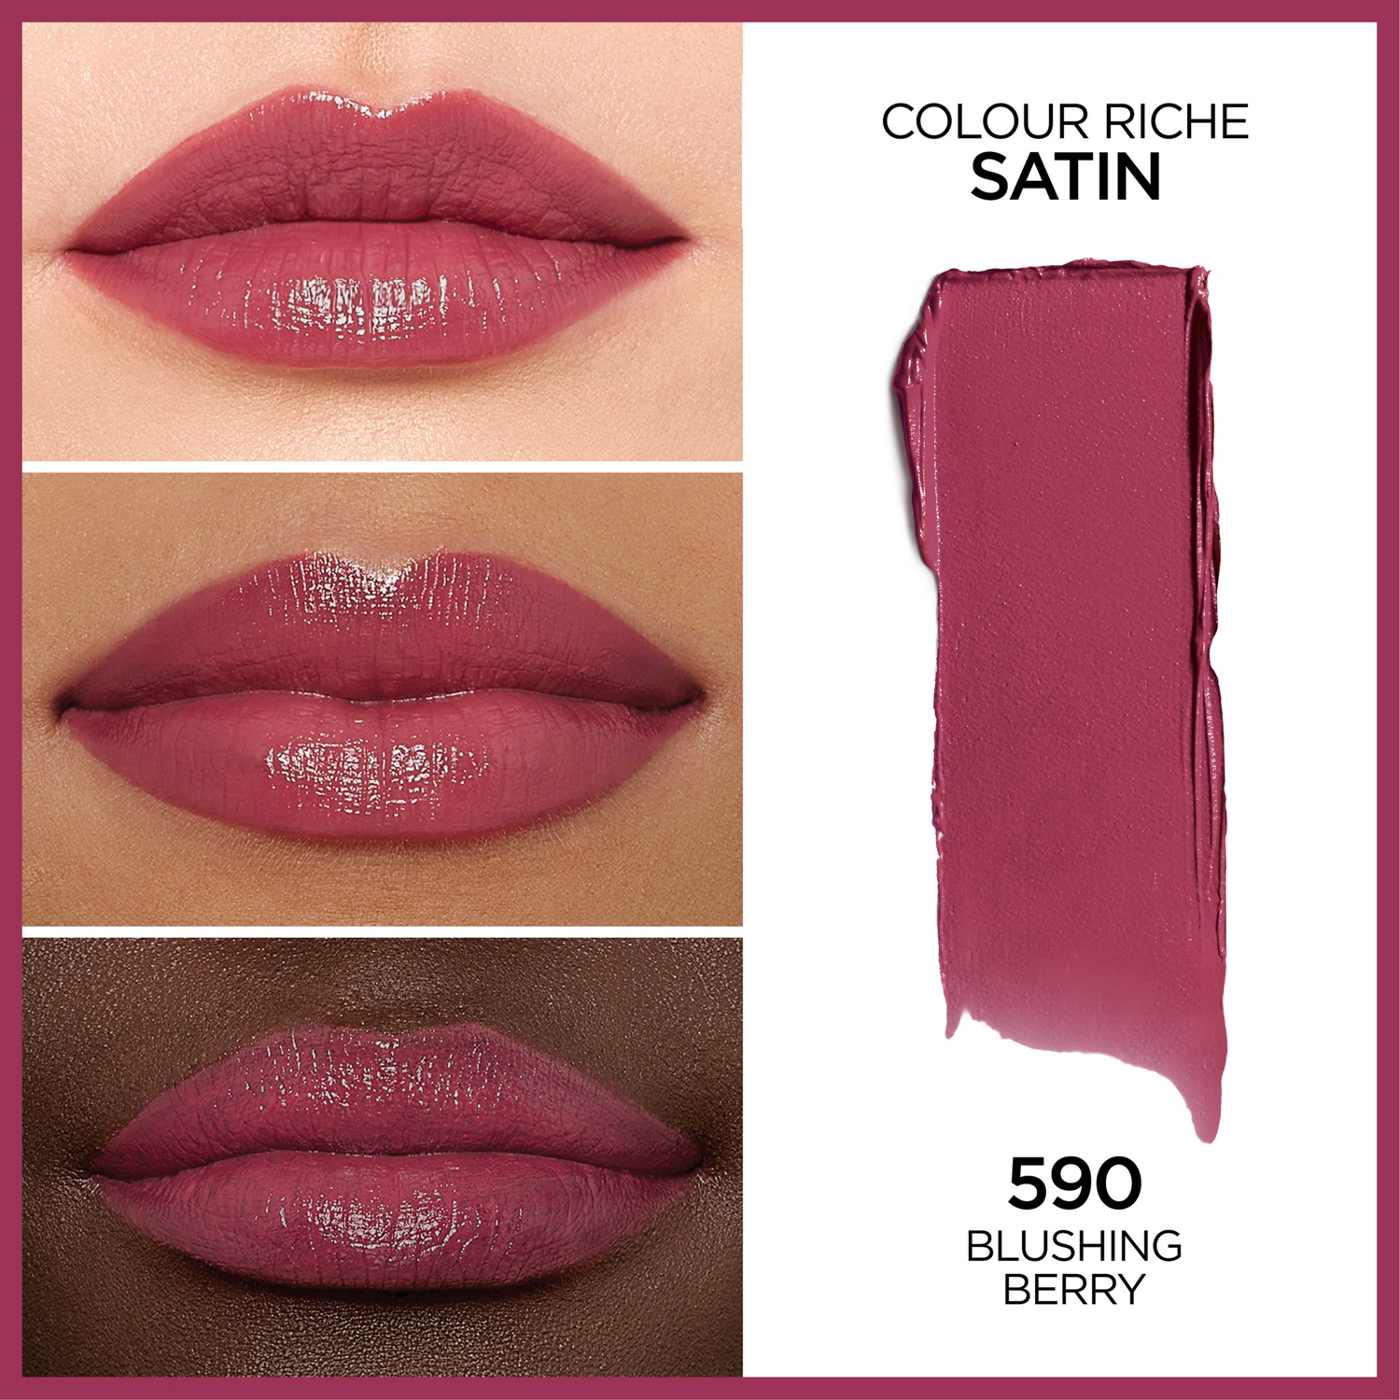 L'Oréal Paris Colour Riche Original Satin Lipstick - Blushing Berry; image 4 of 4